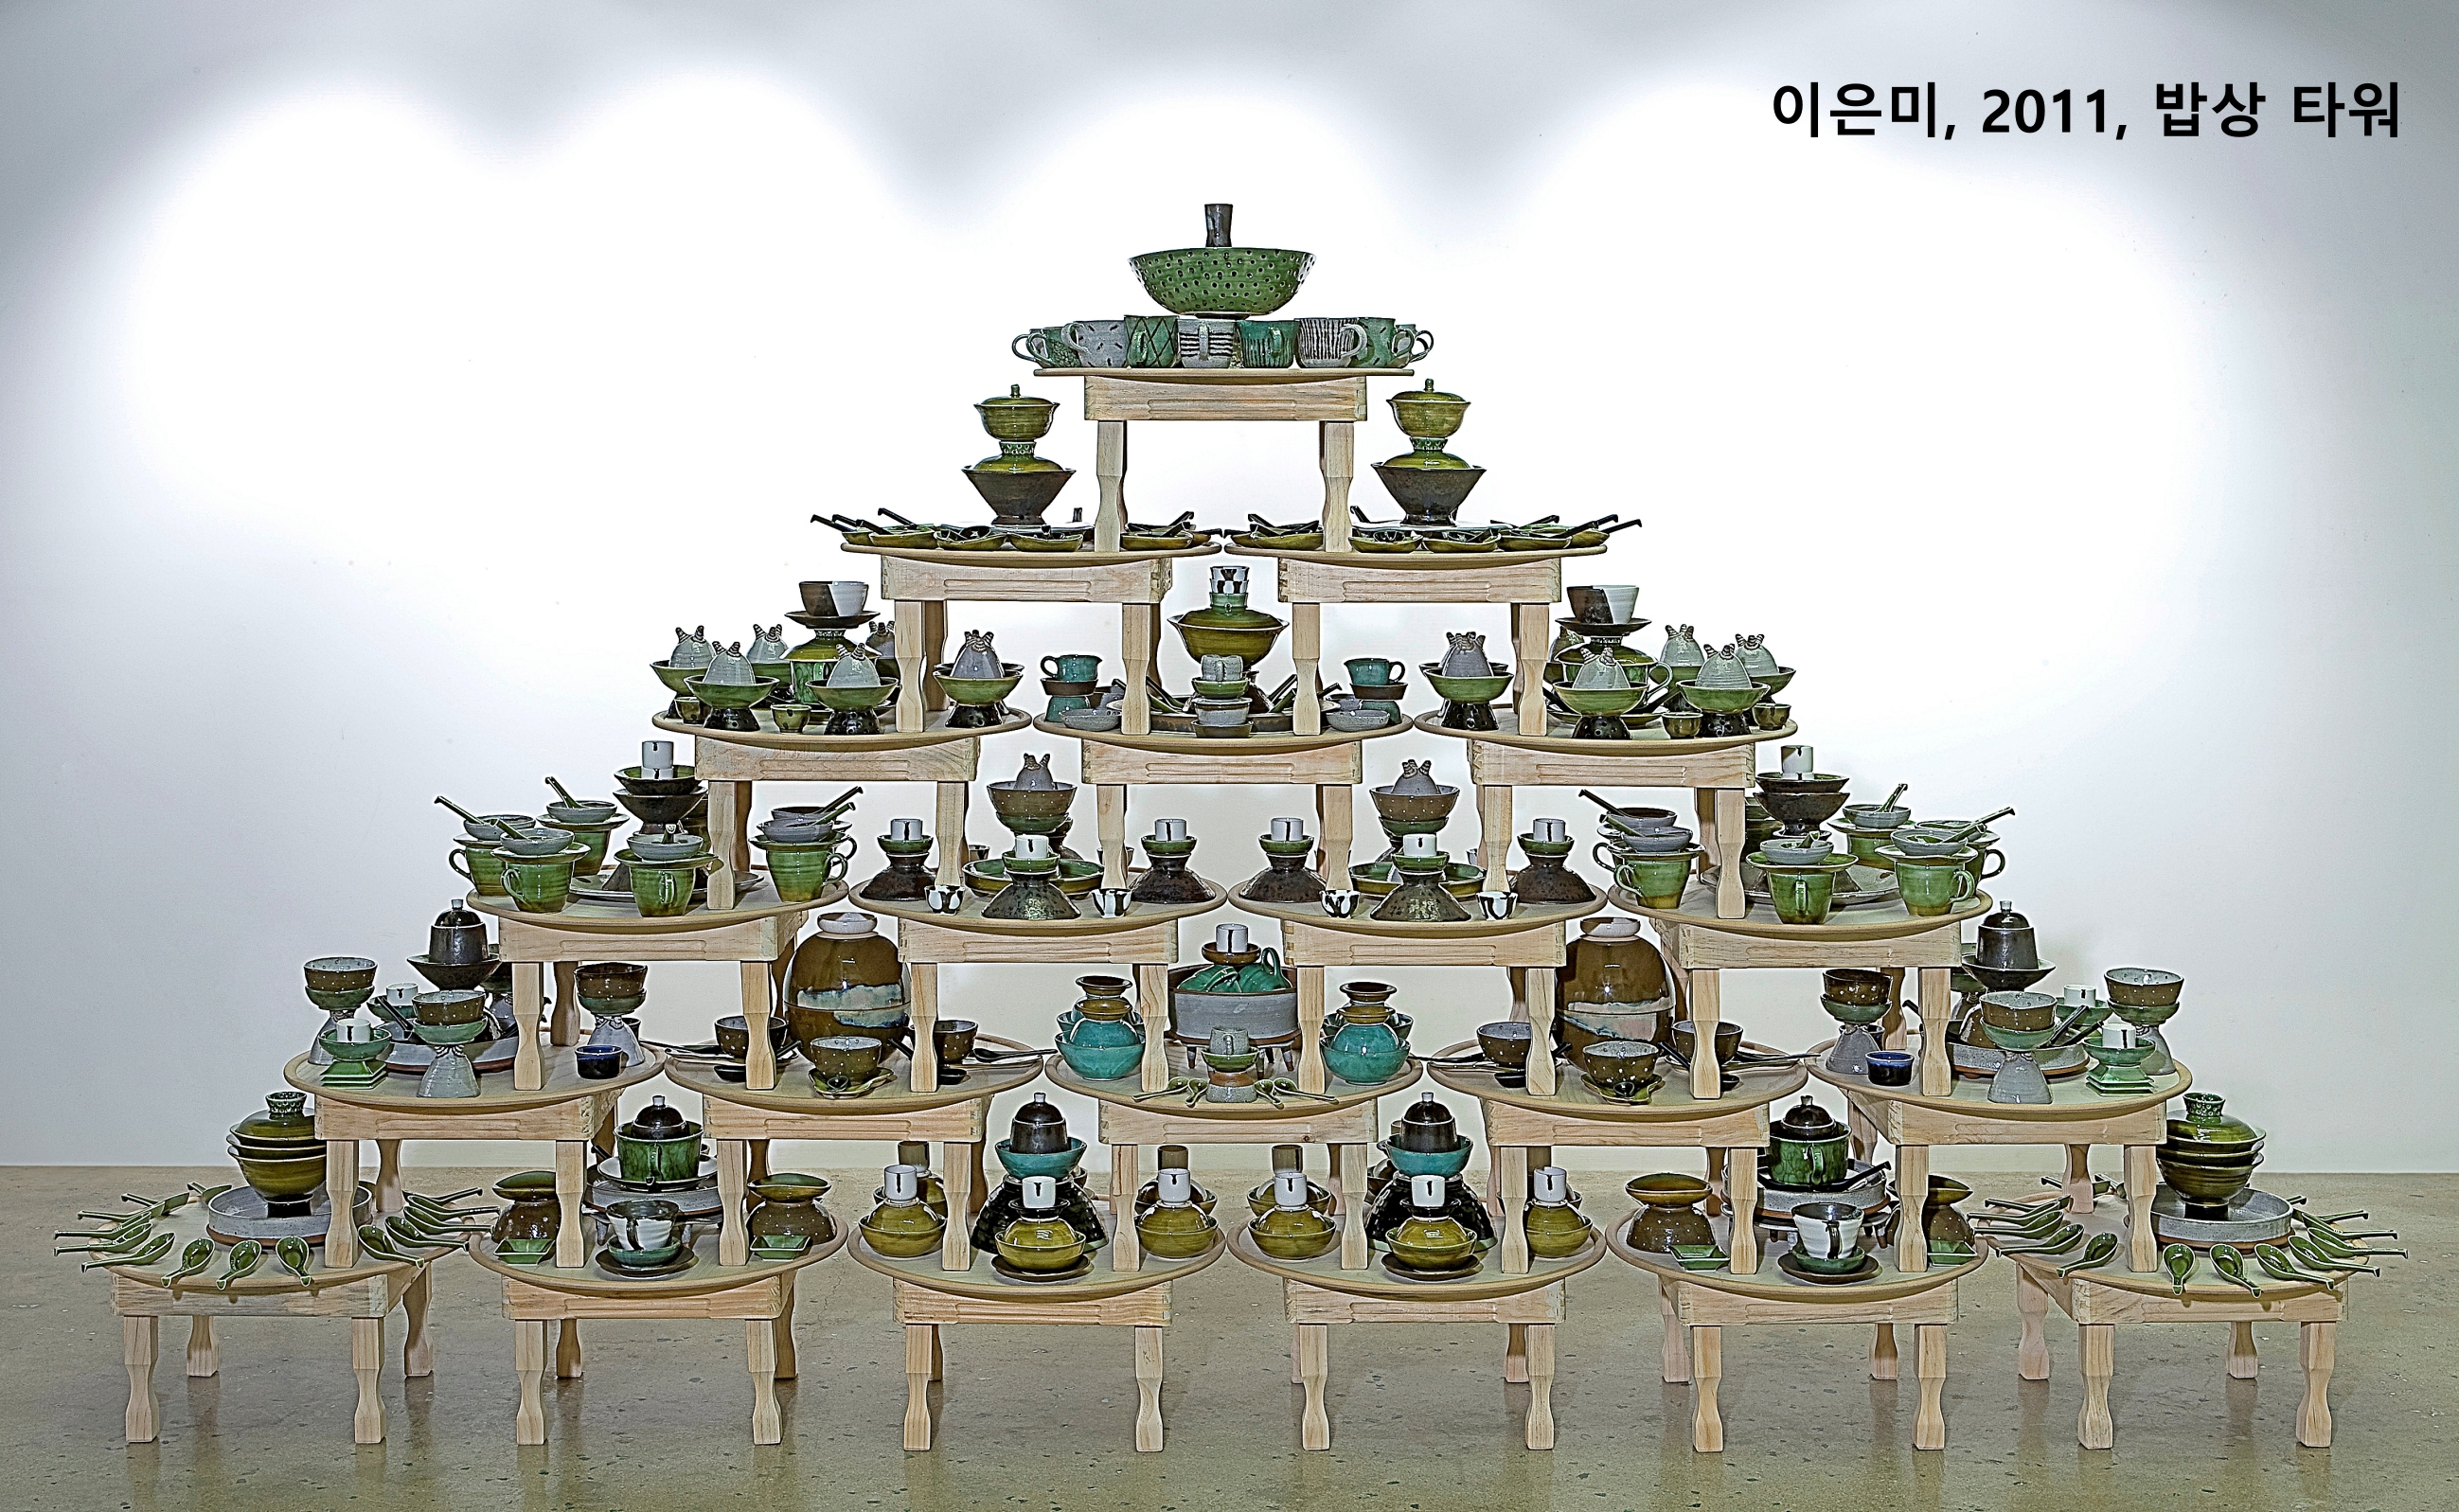 04-2011 이은미, Babsang Tower, 도자, 밥상, 370 × 70 × 210 cm.jpg